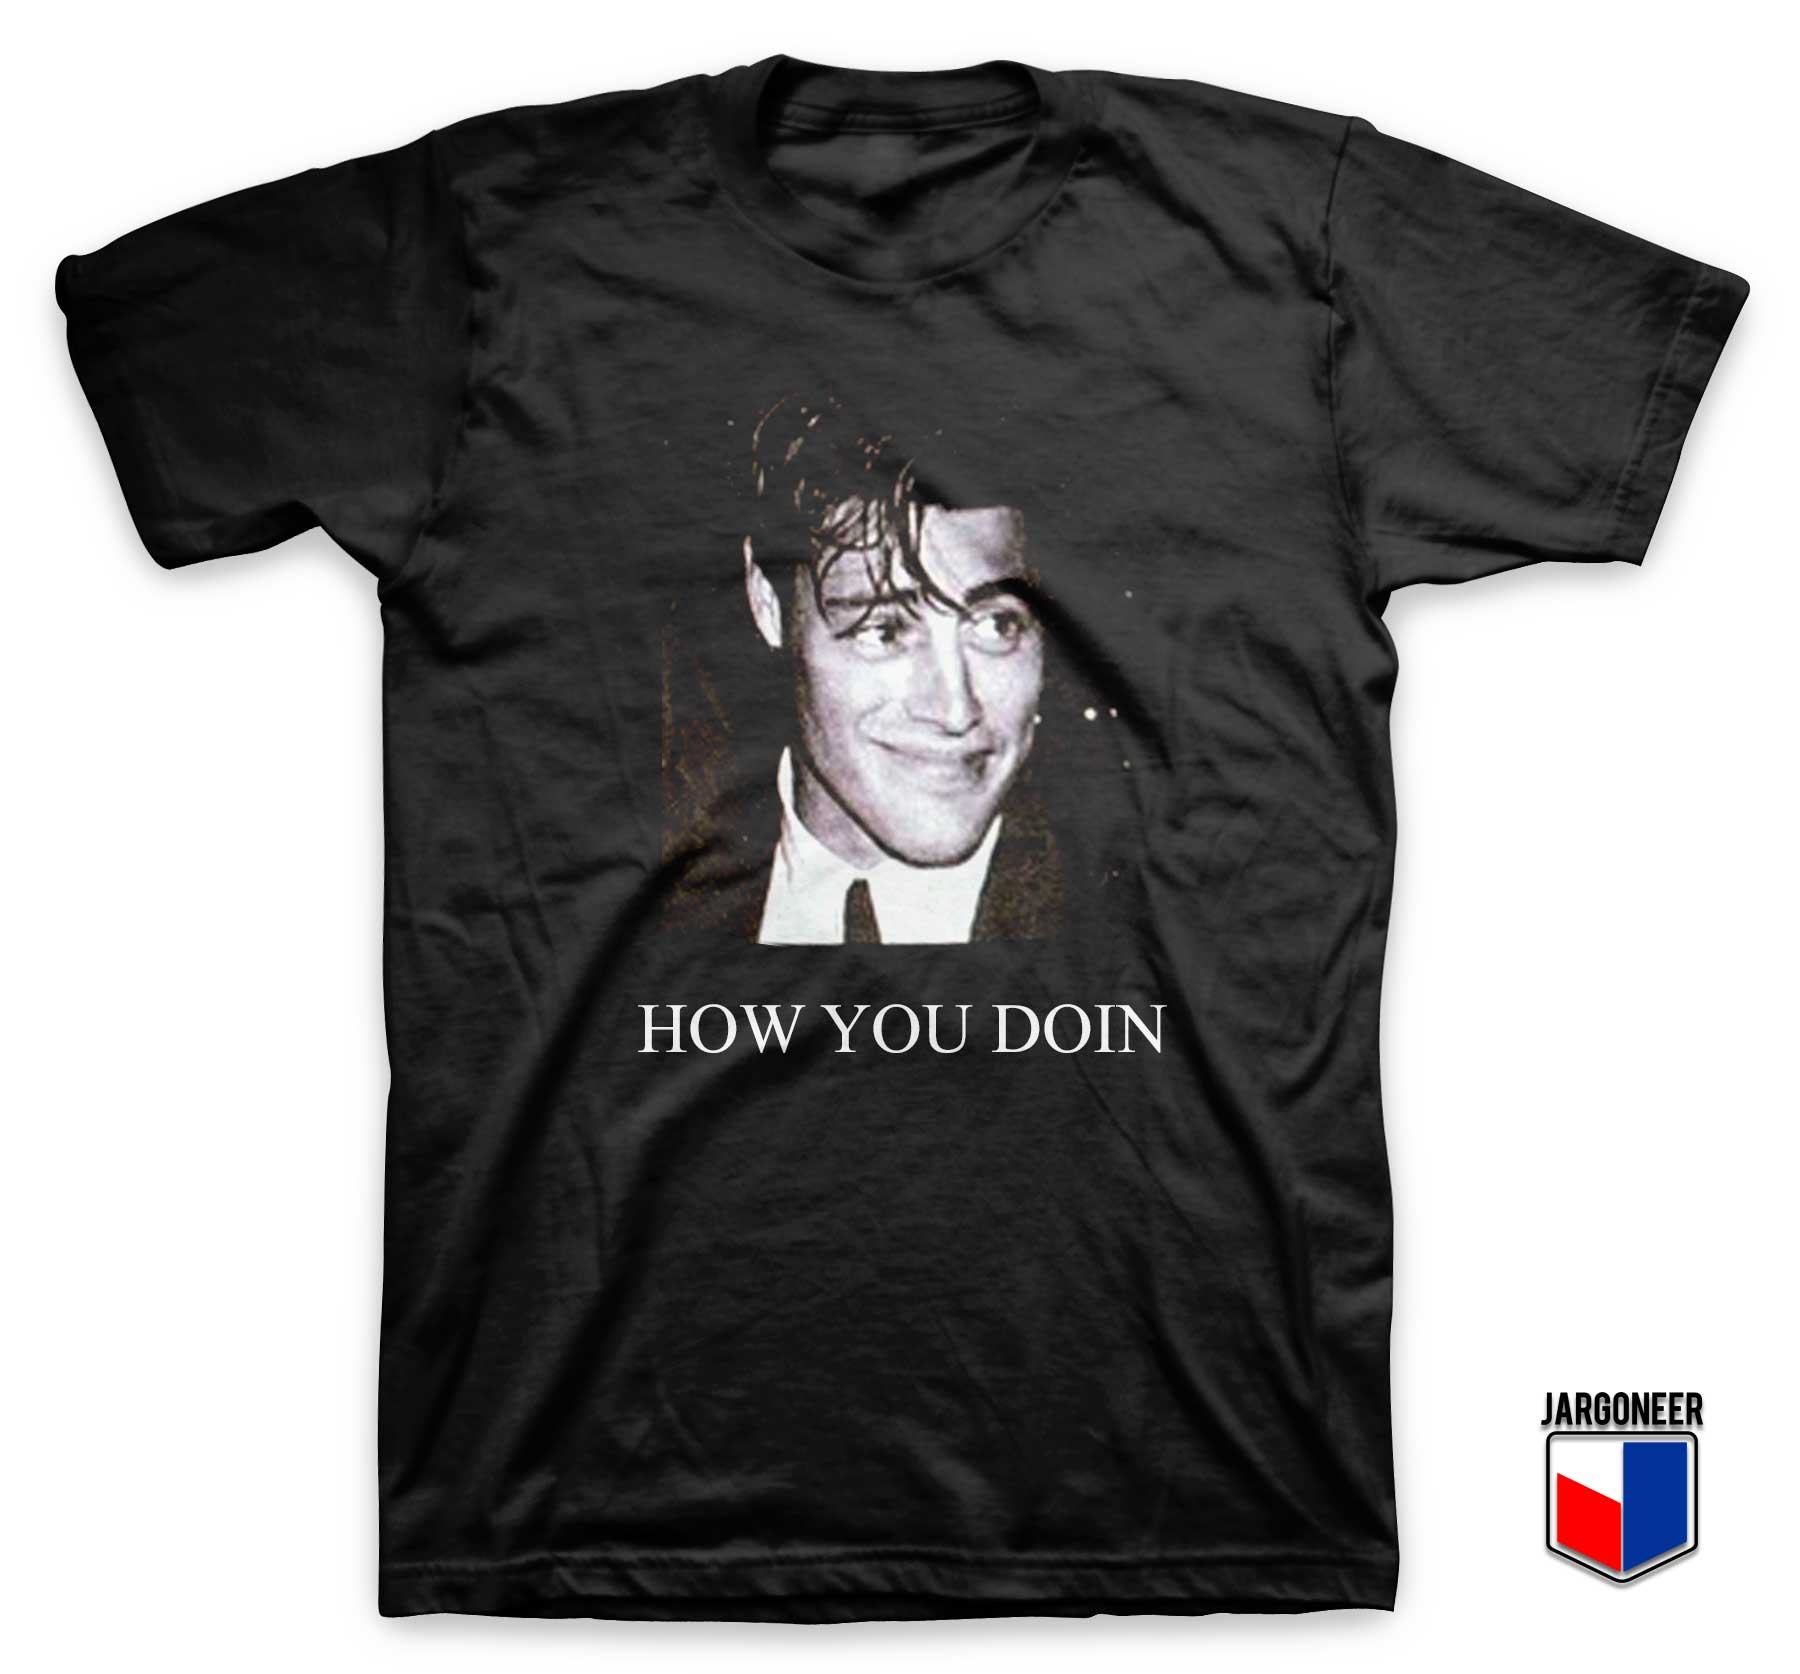 Joey How You Doin T Shirt - Shop Unique Graphic Cool Shirt Designs